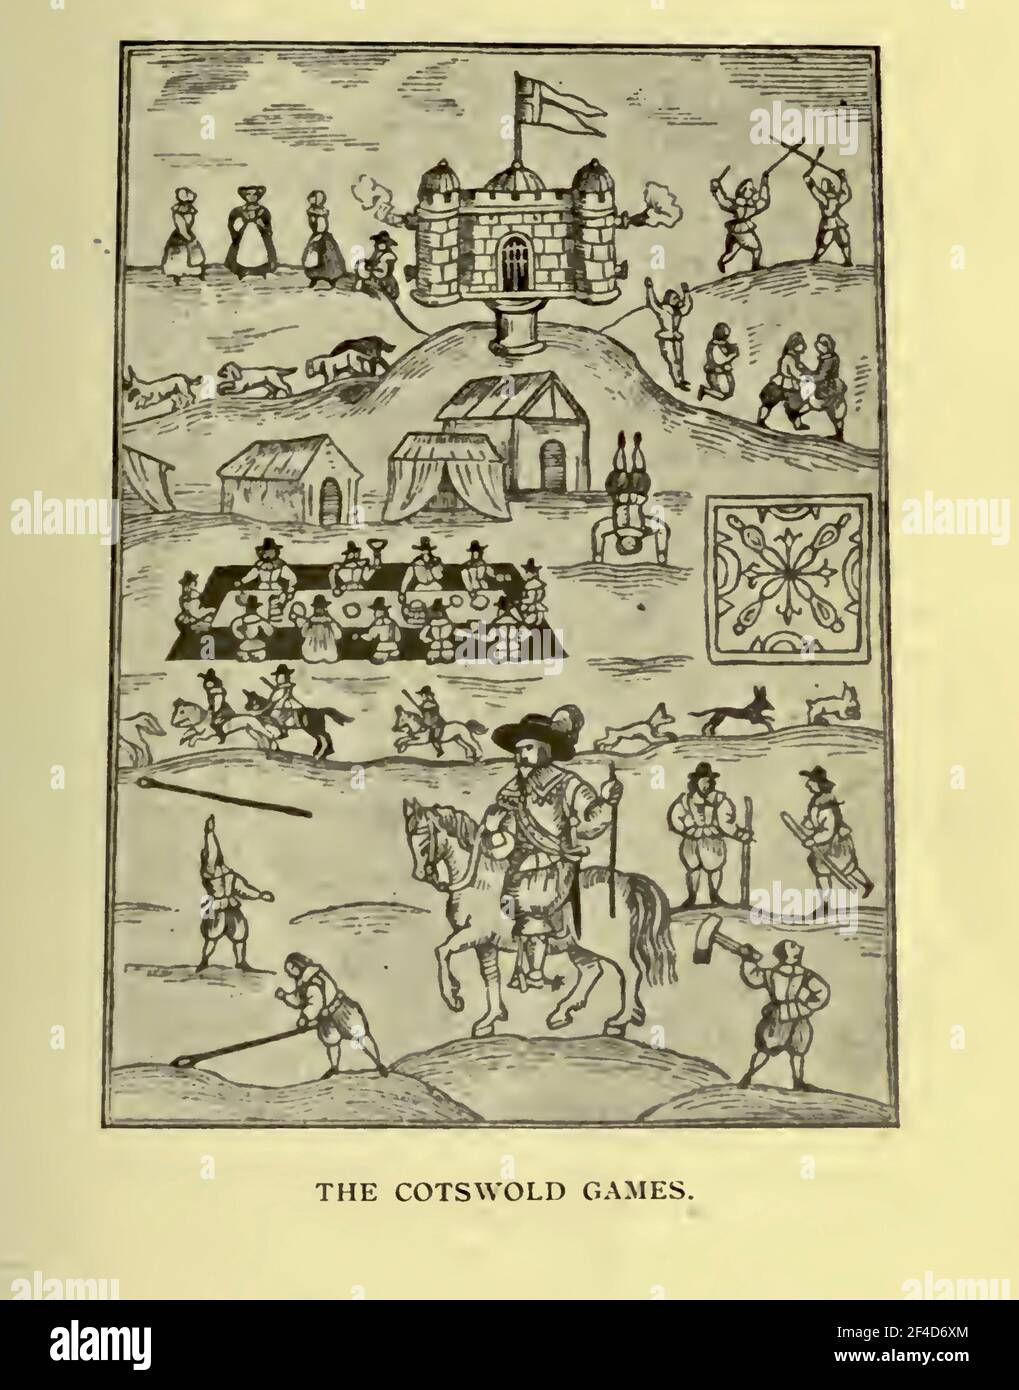 Bild aus dem Jahr 1636, das die Cotswold Games zeigt - Robert Dover, der Gründer der Spiele, ist zu Pferd und trägt einen Zauberstab. Eine fröhliche Zeit hatten alle. Stockfoto